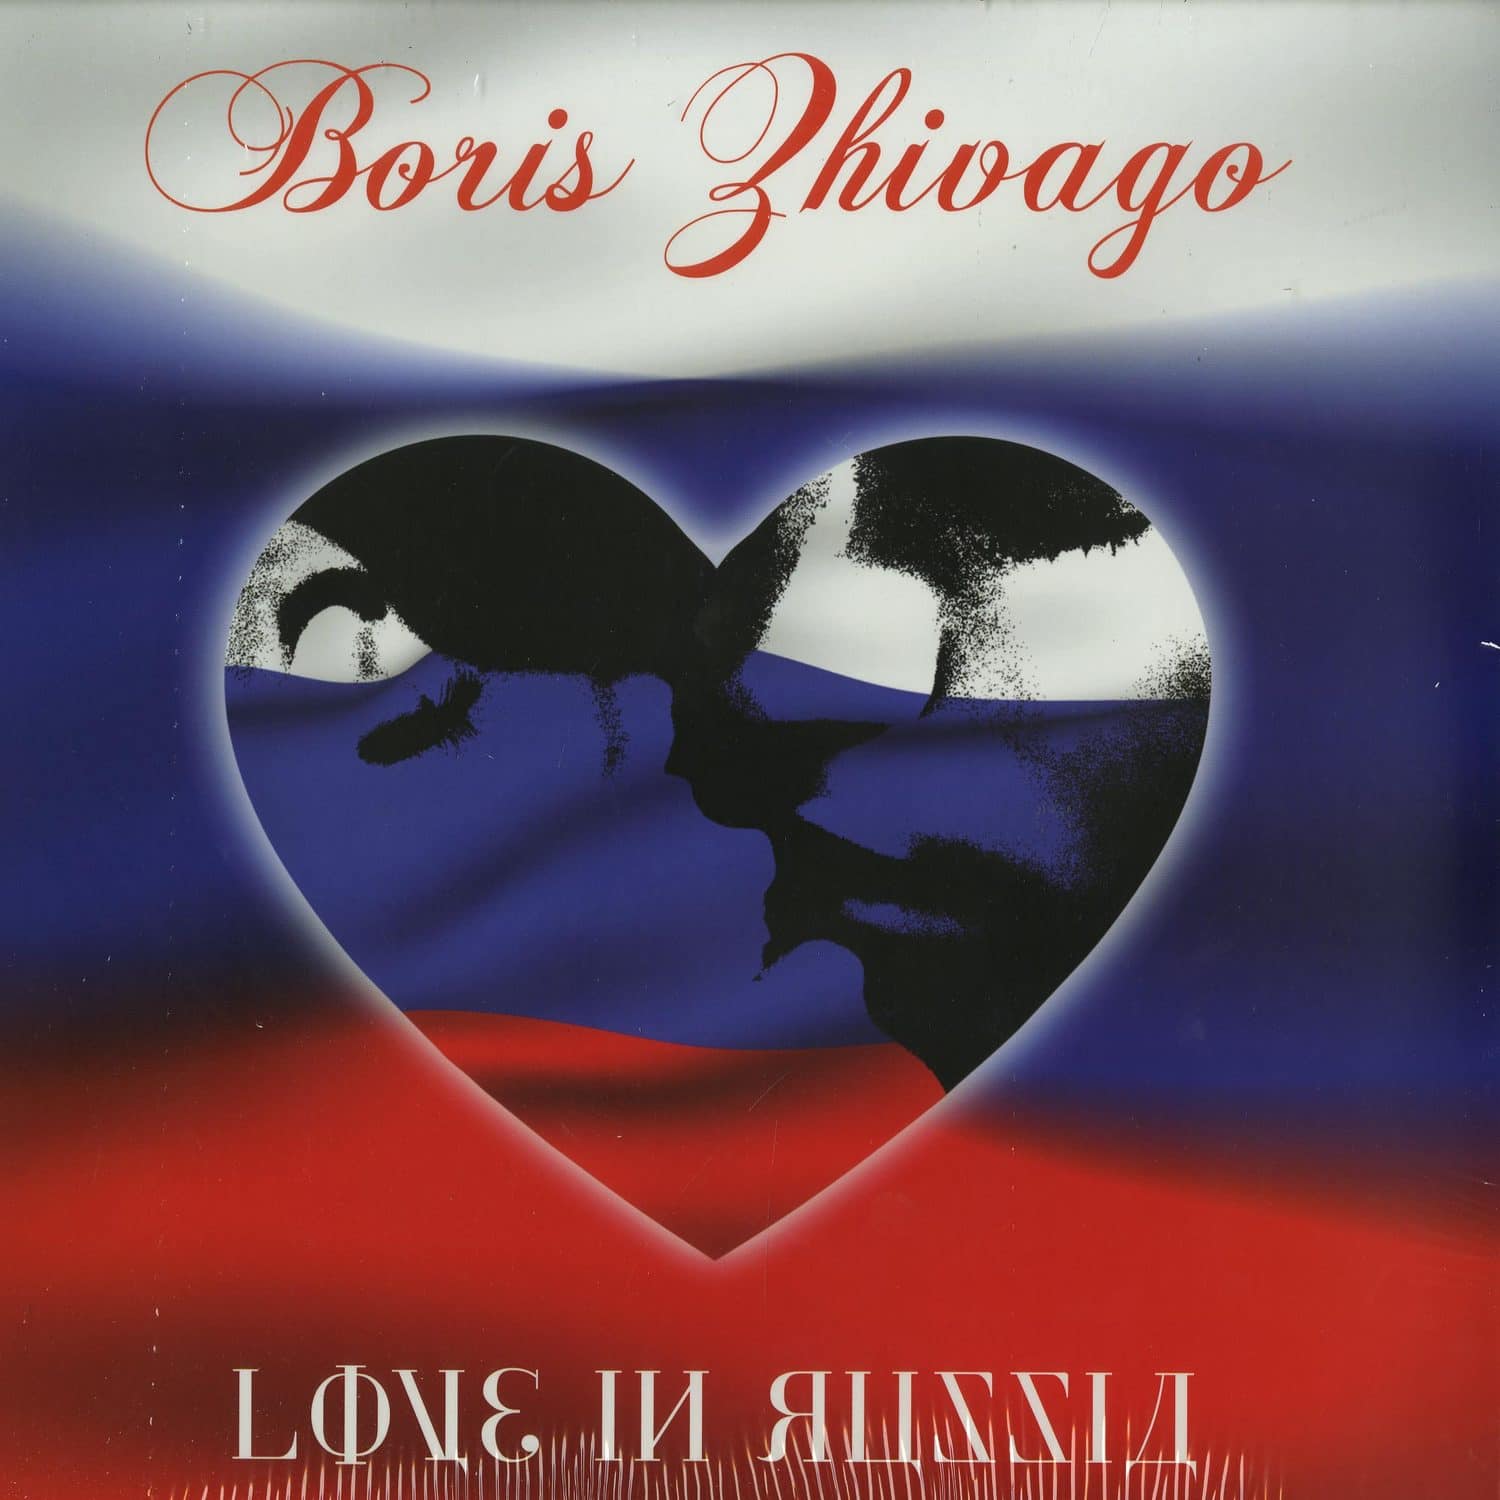 Boris Zhivago - LOVE IN RUSSIA 